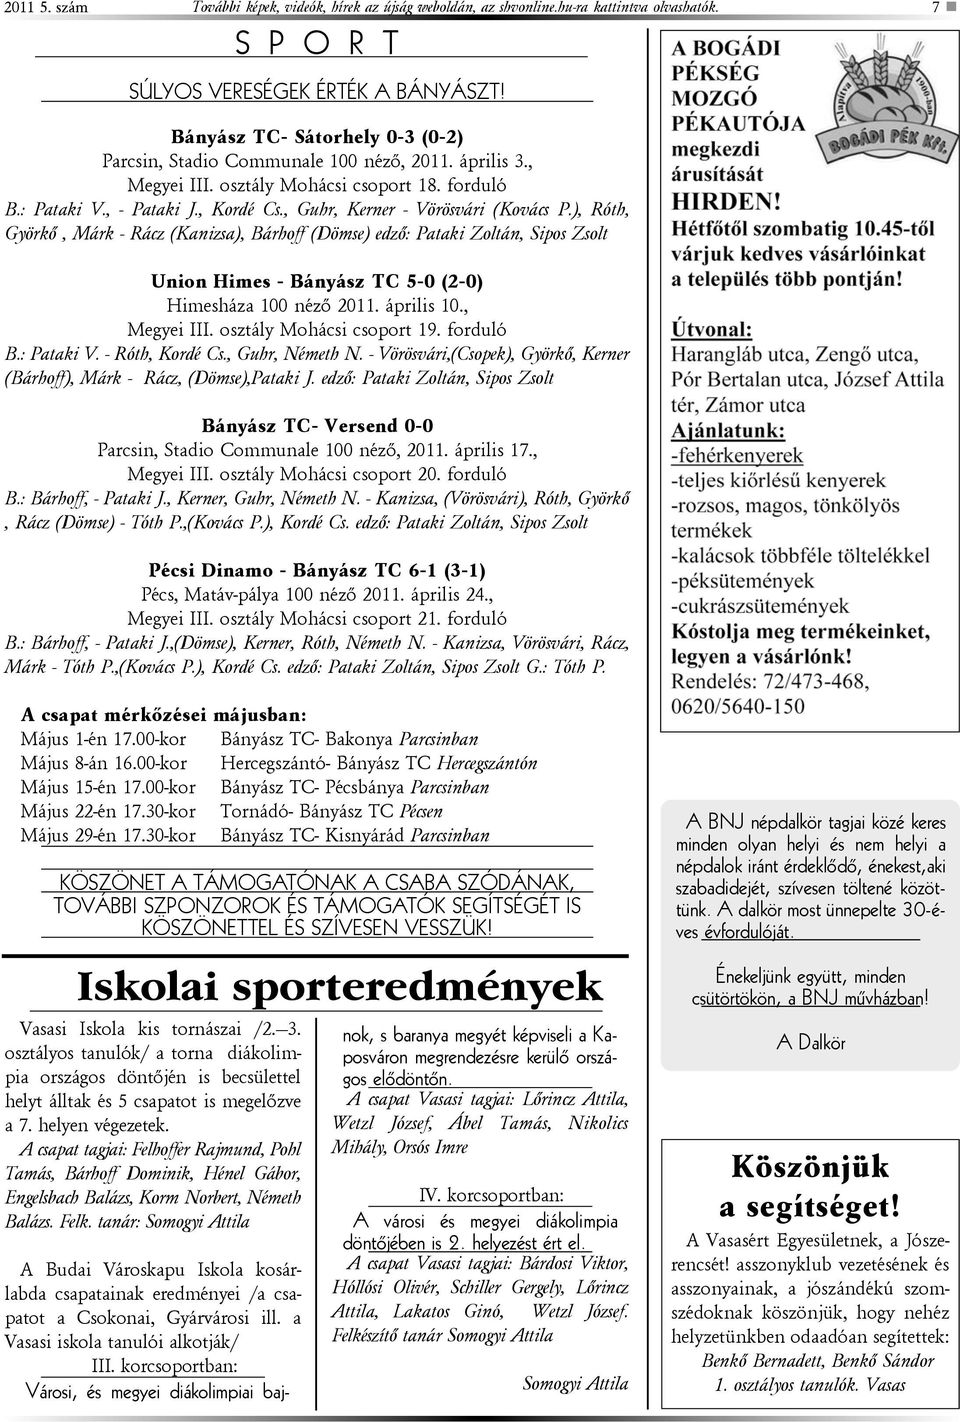 , Guhr, Kerner - Vörösvári (Kovács P.), Róth, Györkõ, Márk - Rácz (Kanizsa), Bárhoff (Dömse) edzõ: Pataki Zoltán, Sipos Zsolt Union Himes - Bányász TC 5-0 (2-0) Himesháza 100 nézõ 2011. április 10.